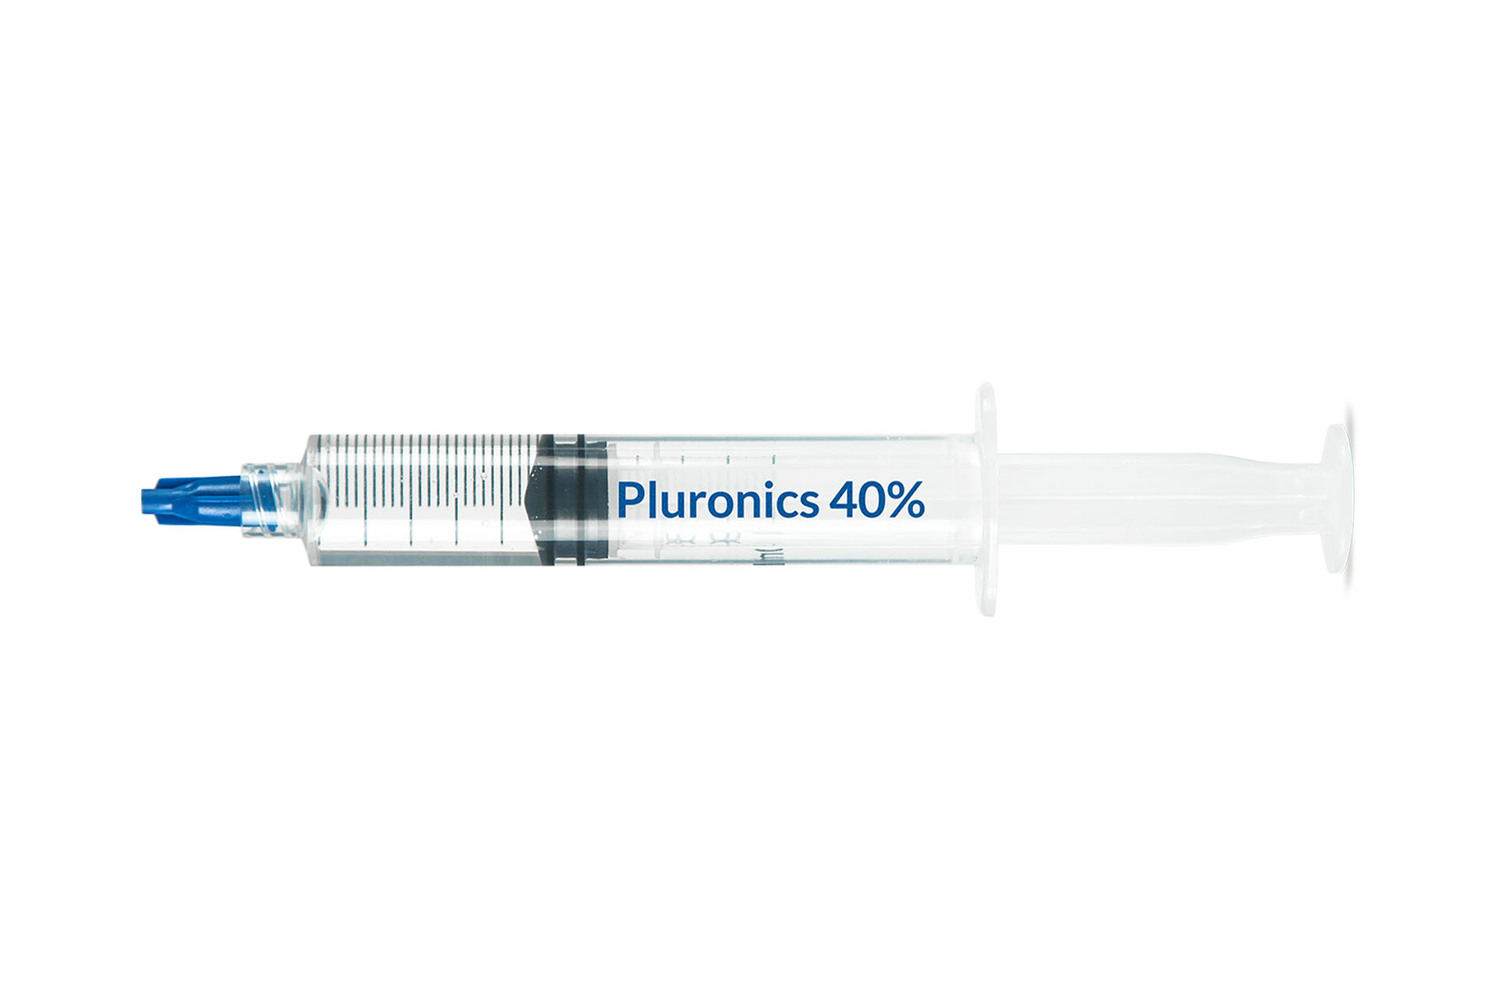 Pluronics 40%, 3 x 5 mL